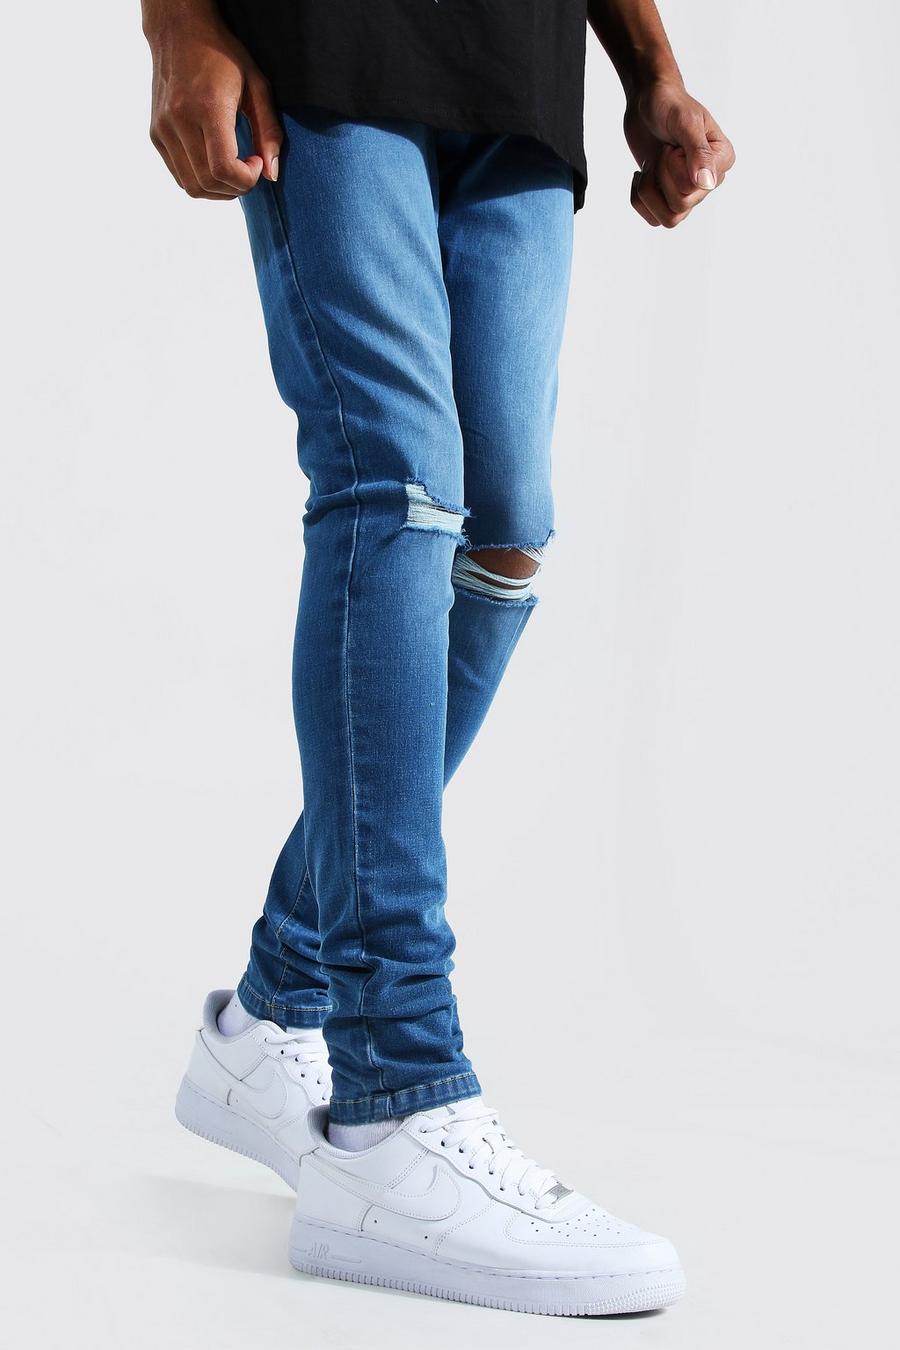 כחול בהיר סקיני ג'ינס ripped בברכיים לגברים גבוהים image number 1